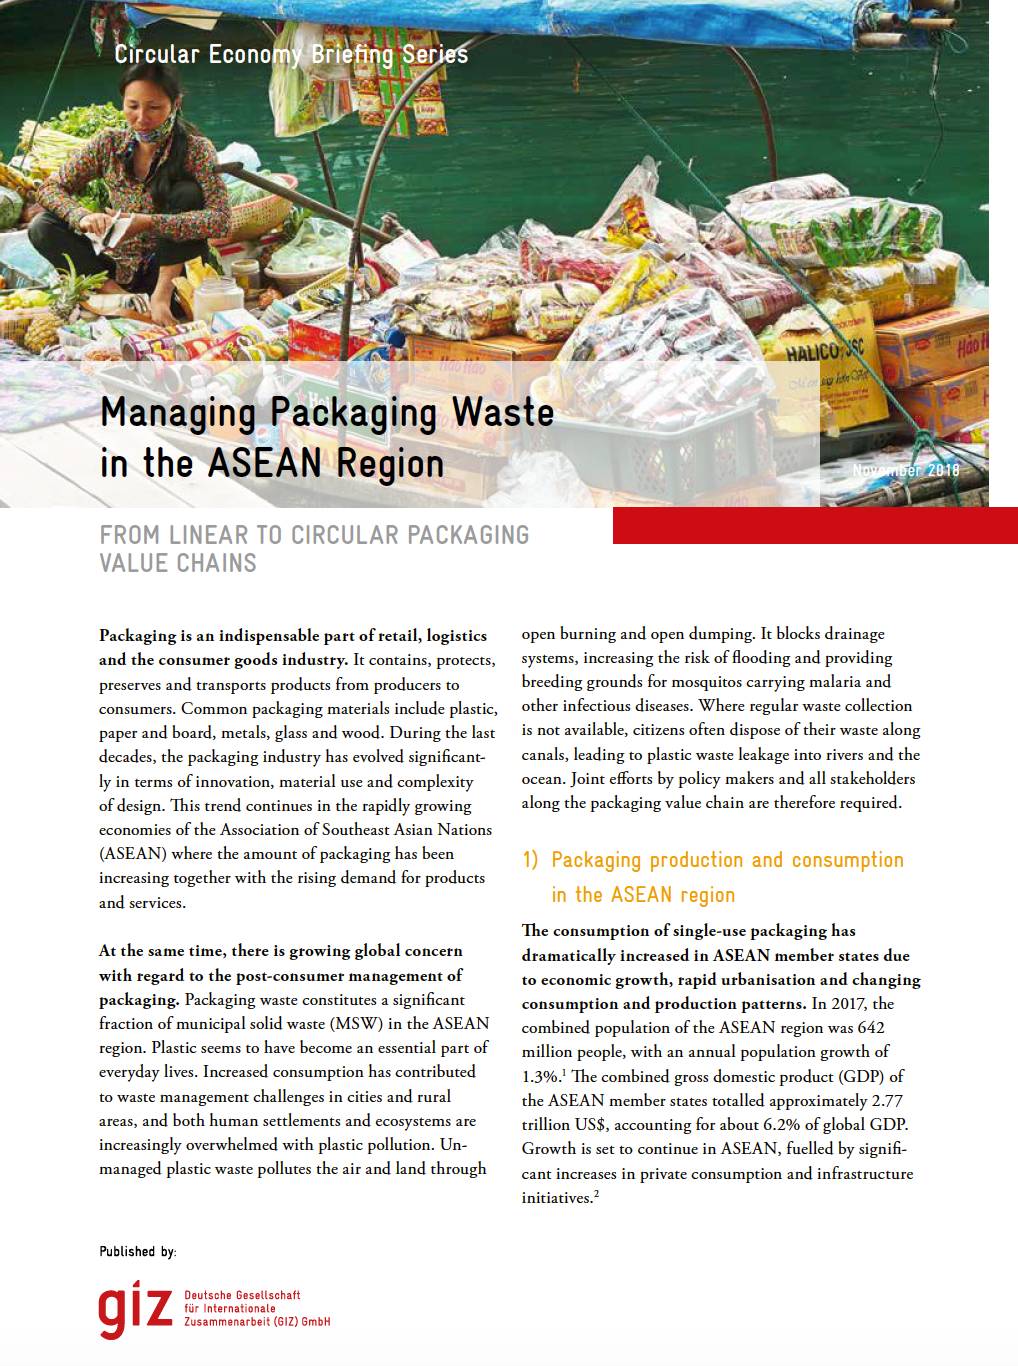 Managing Packaging Waste in the ASEAN Region